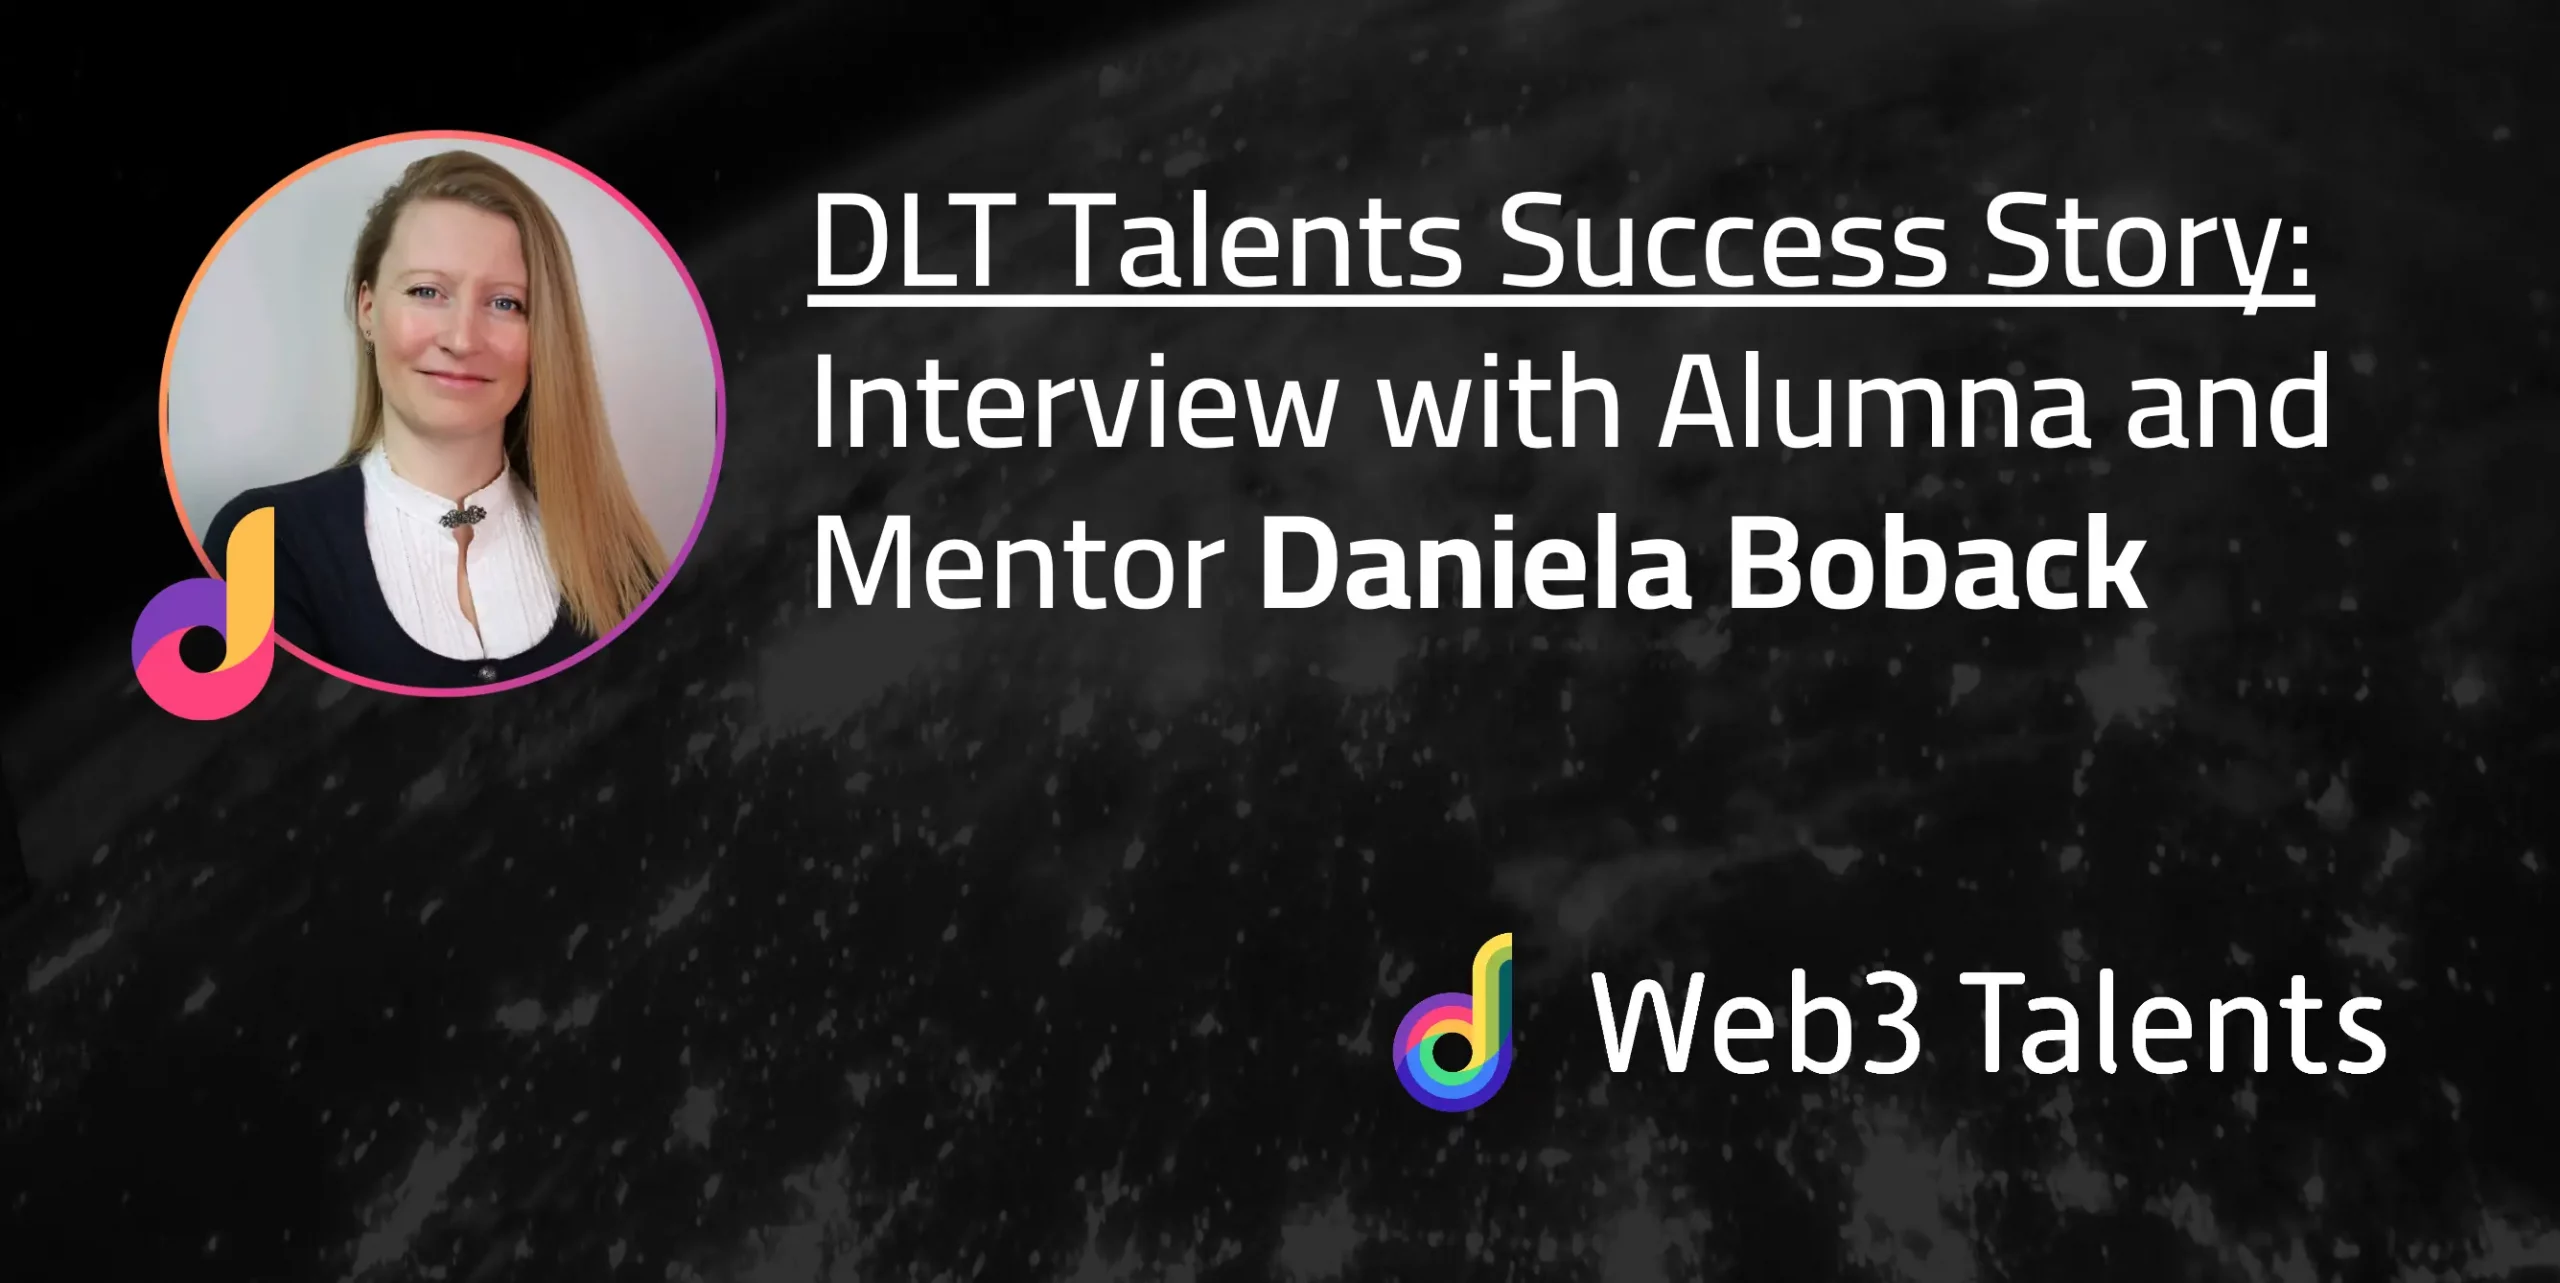 DLT Talents Success Story: Daniela Boback